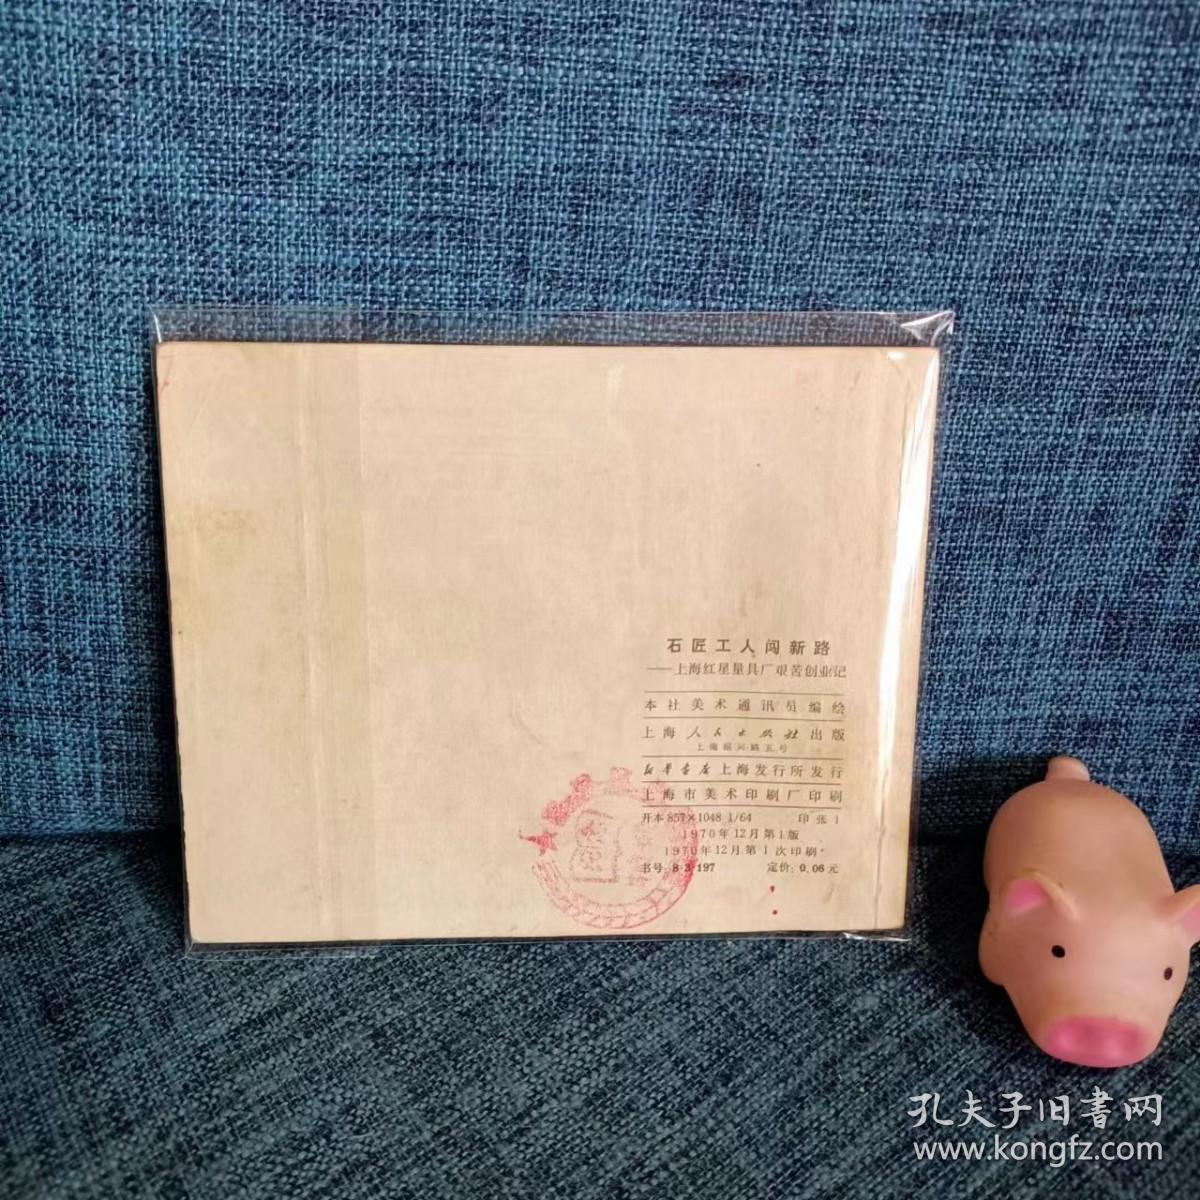 老版连环画： 《石匠工人闯新路》上海红星量具厂艰苦创业史  1970一版一印 有主席语录